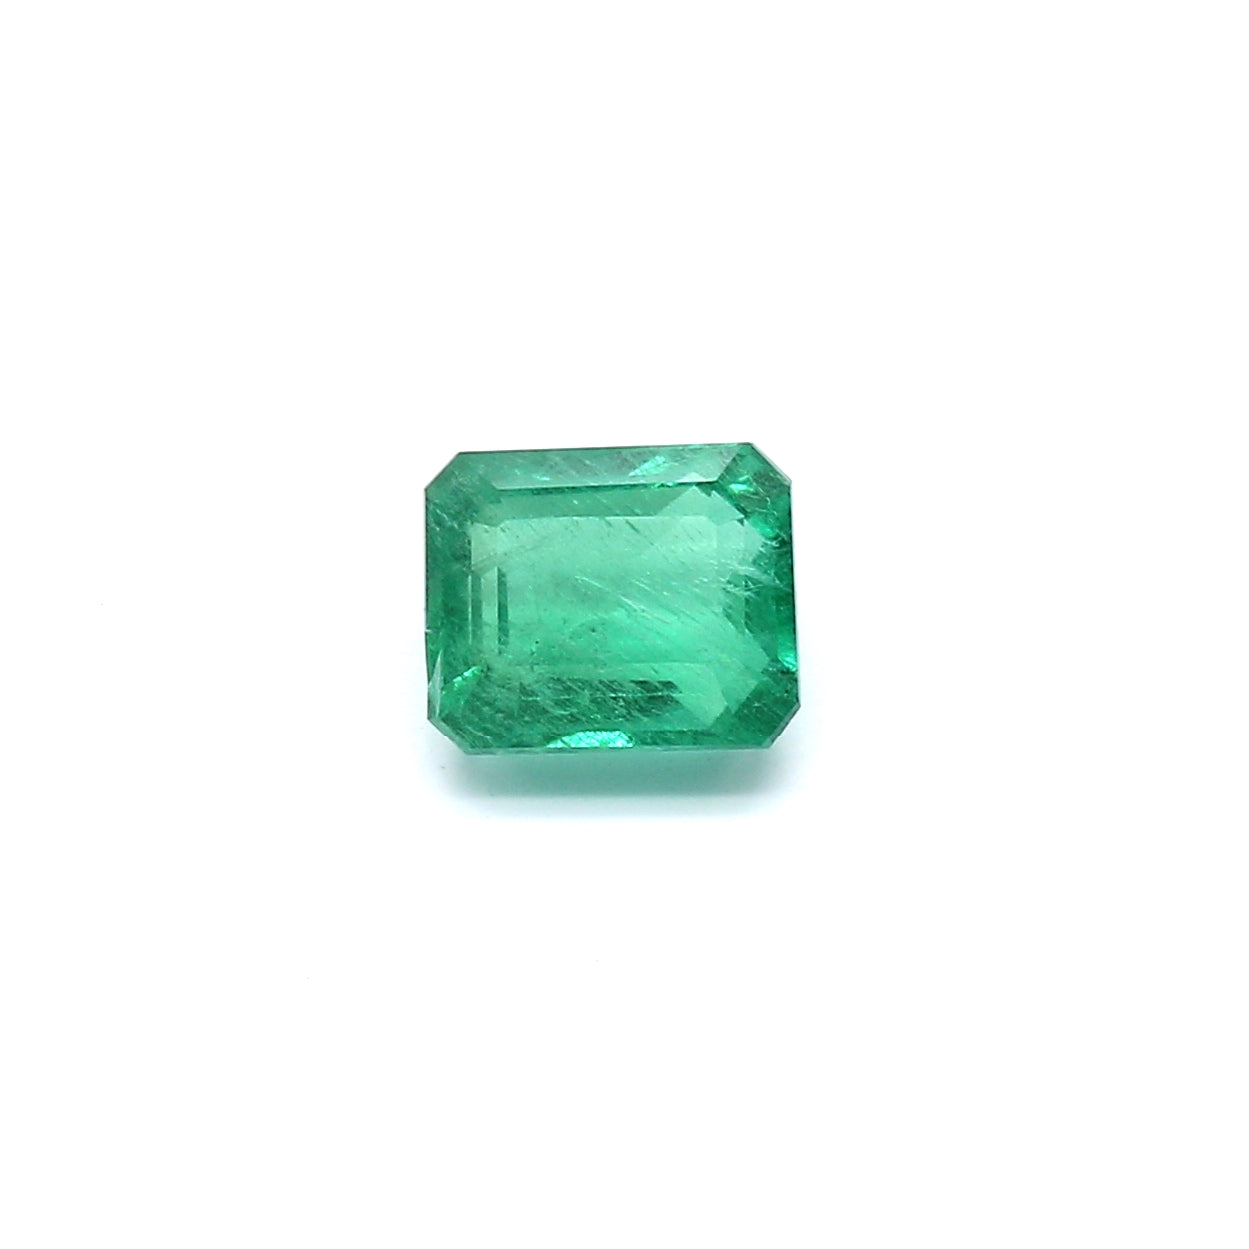 1.21ct Octagon Emerald, Minor Oil, Zambia - 6.50 x 5.48 x 3.99mm